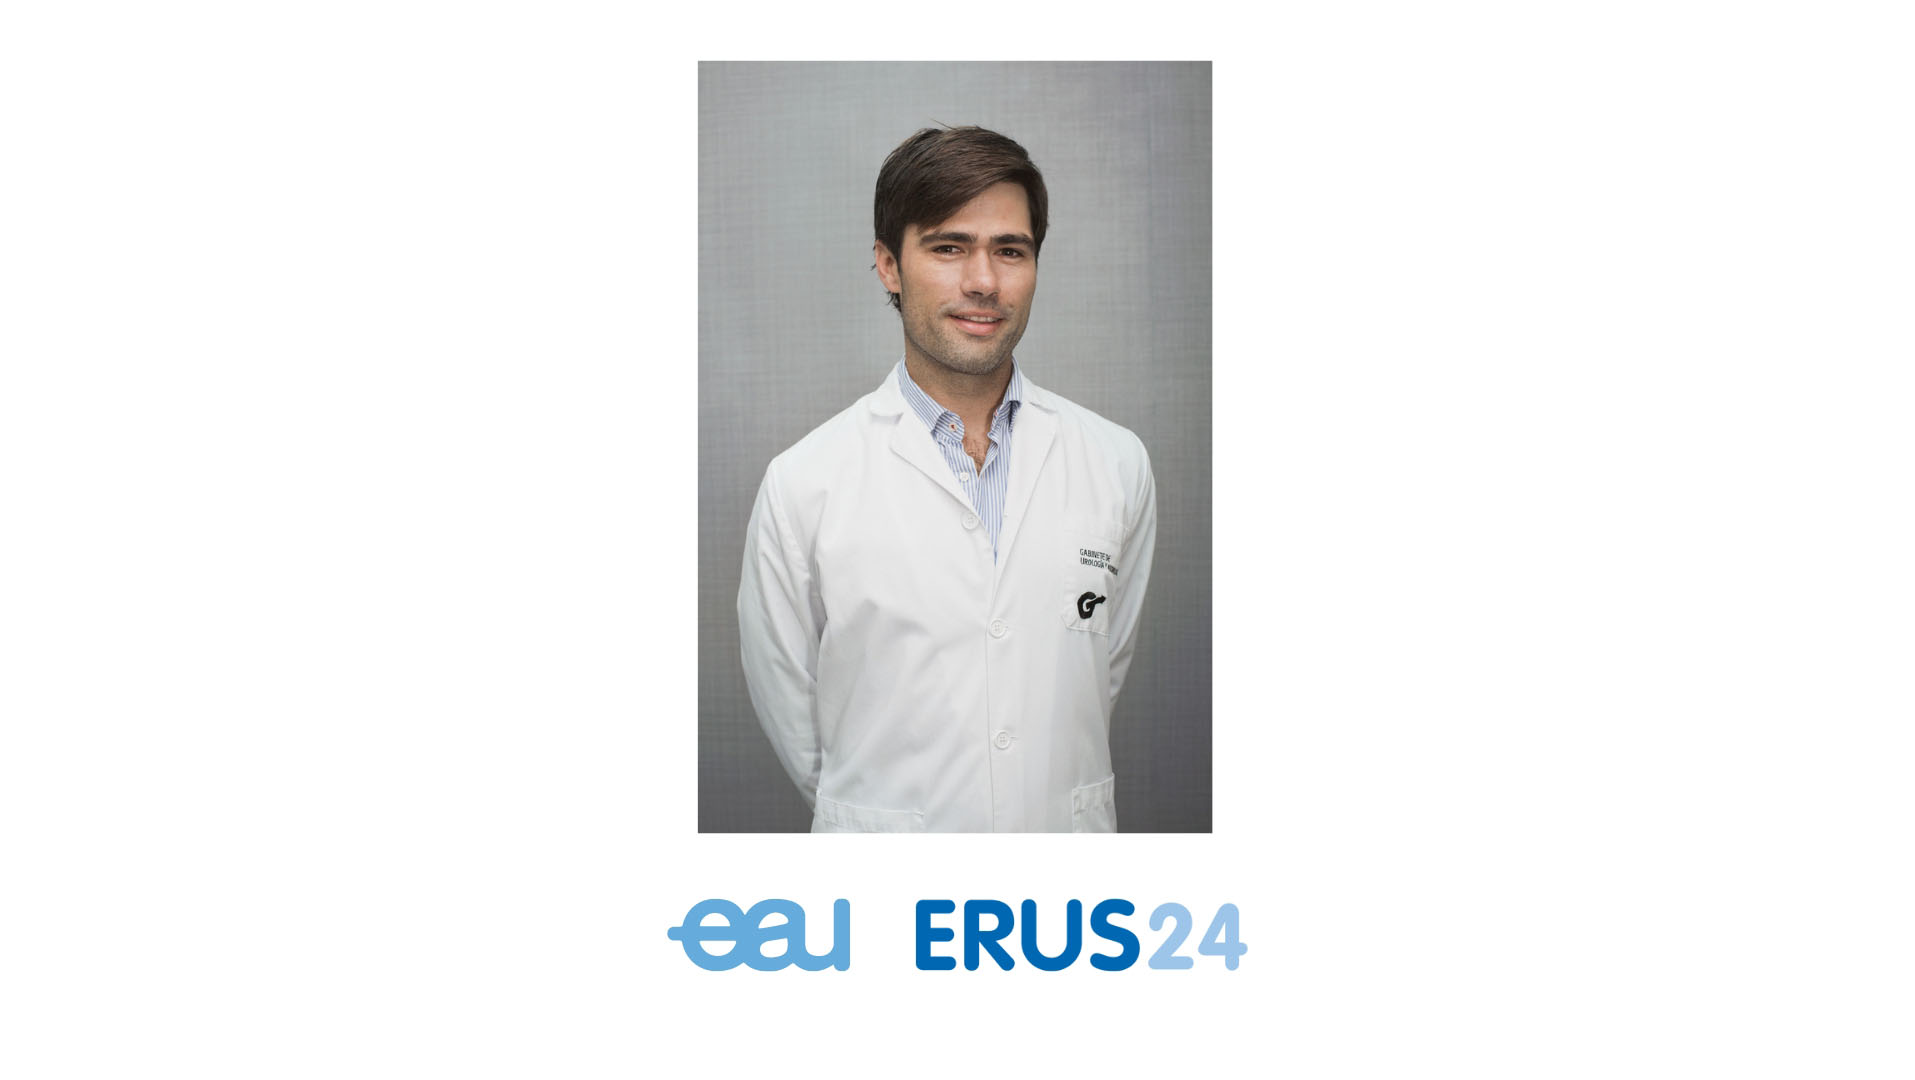 Pablo Juárez del Dago, directeur de notre centre, nommé ERUS Technology Officer de l'Association européenne d'urologie.